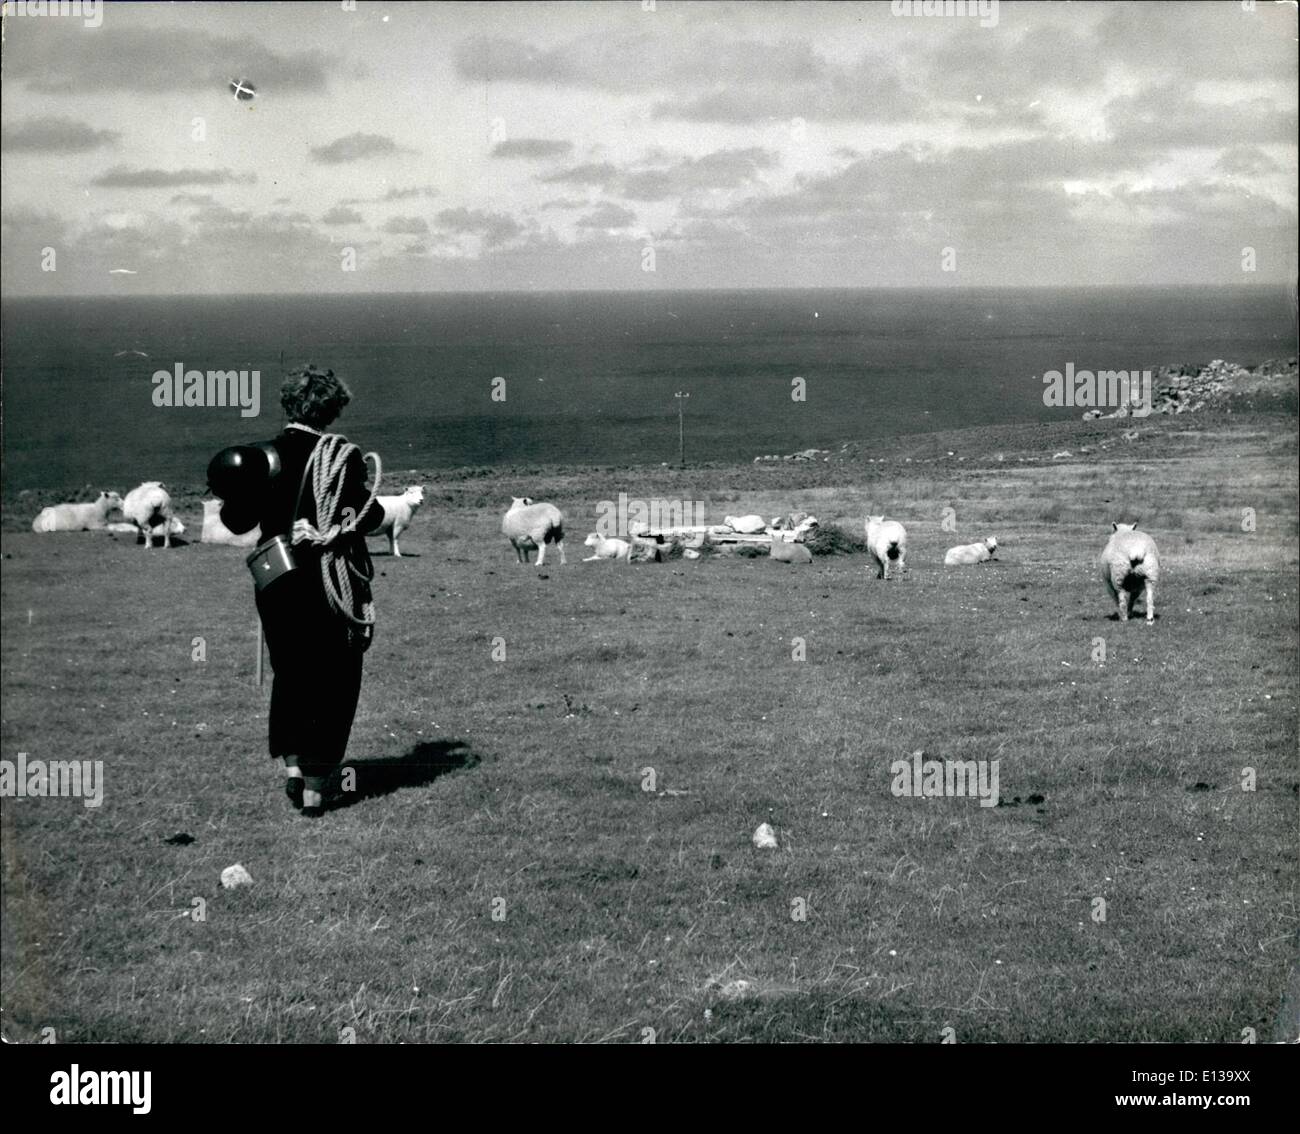 29 février 2012 - Préfet de Lundy Island : En route pour le bord des falaises à la recherche d'oiseaux, Barbara Whitaker se réunit que moutons, chèvres sauvages et les poneys sur la nature s'étend de l'île. Banque D'Images